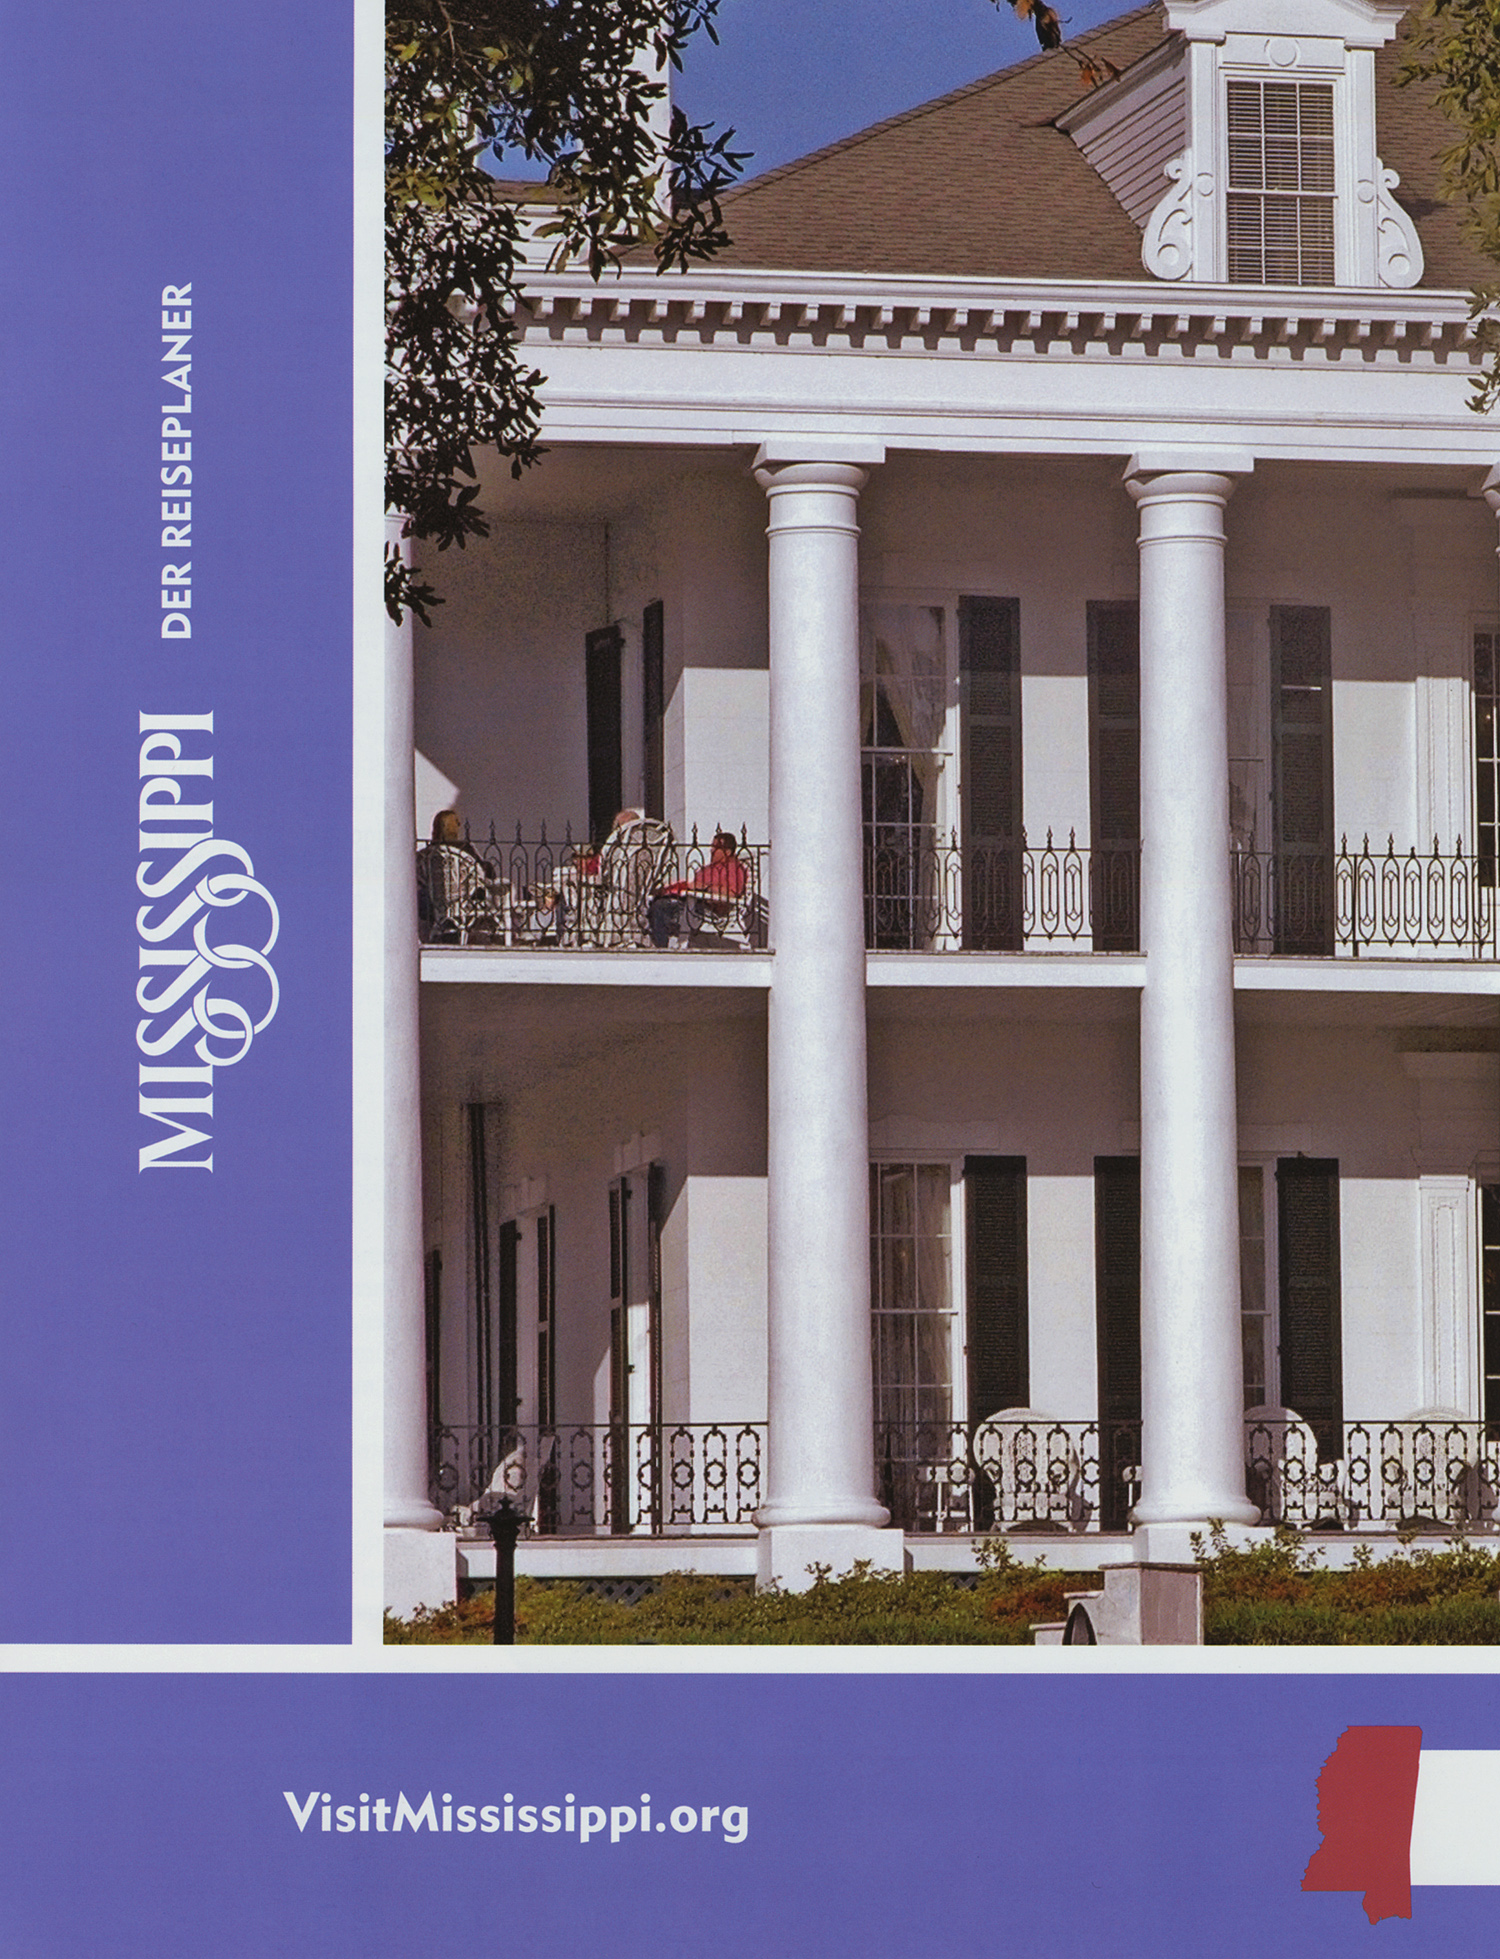 Titelseite des Reiseplaners Mississippi 2009